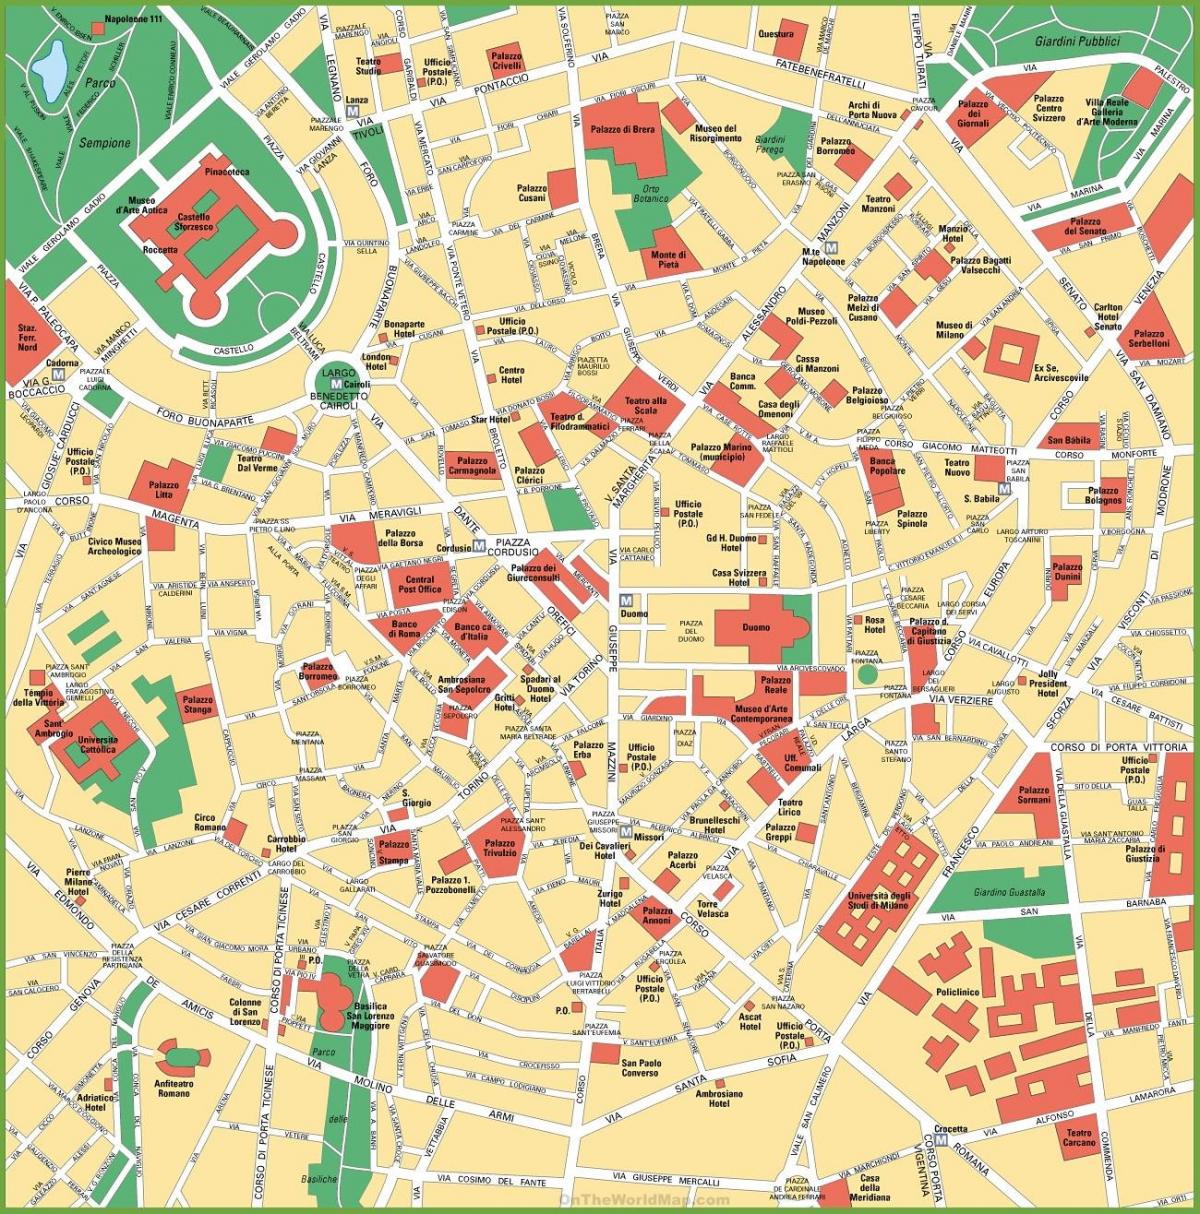 stad karta över milano italien